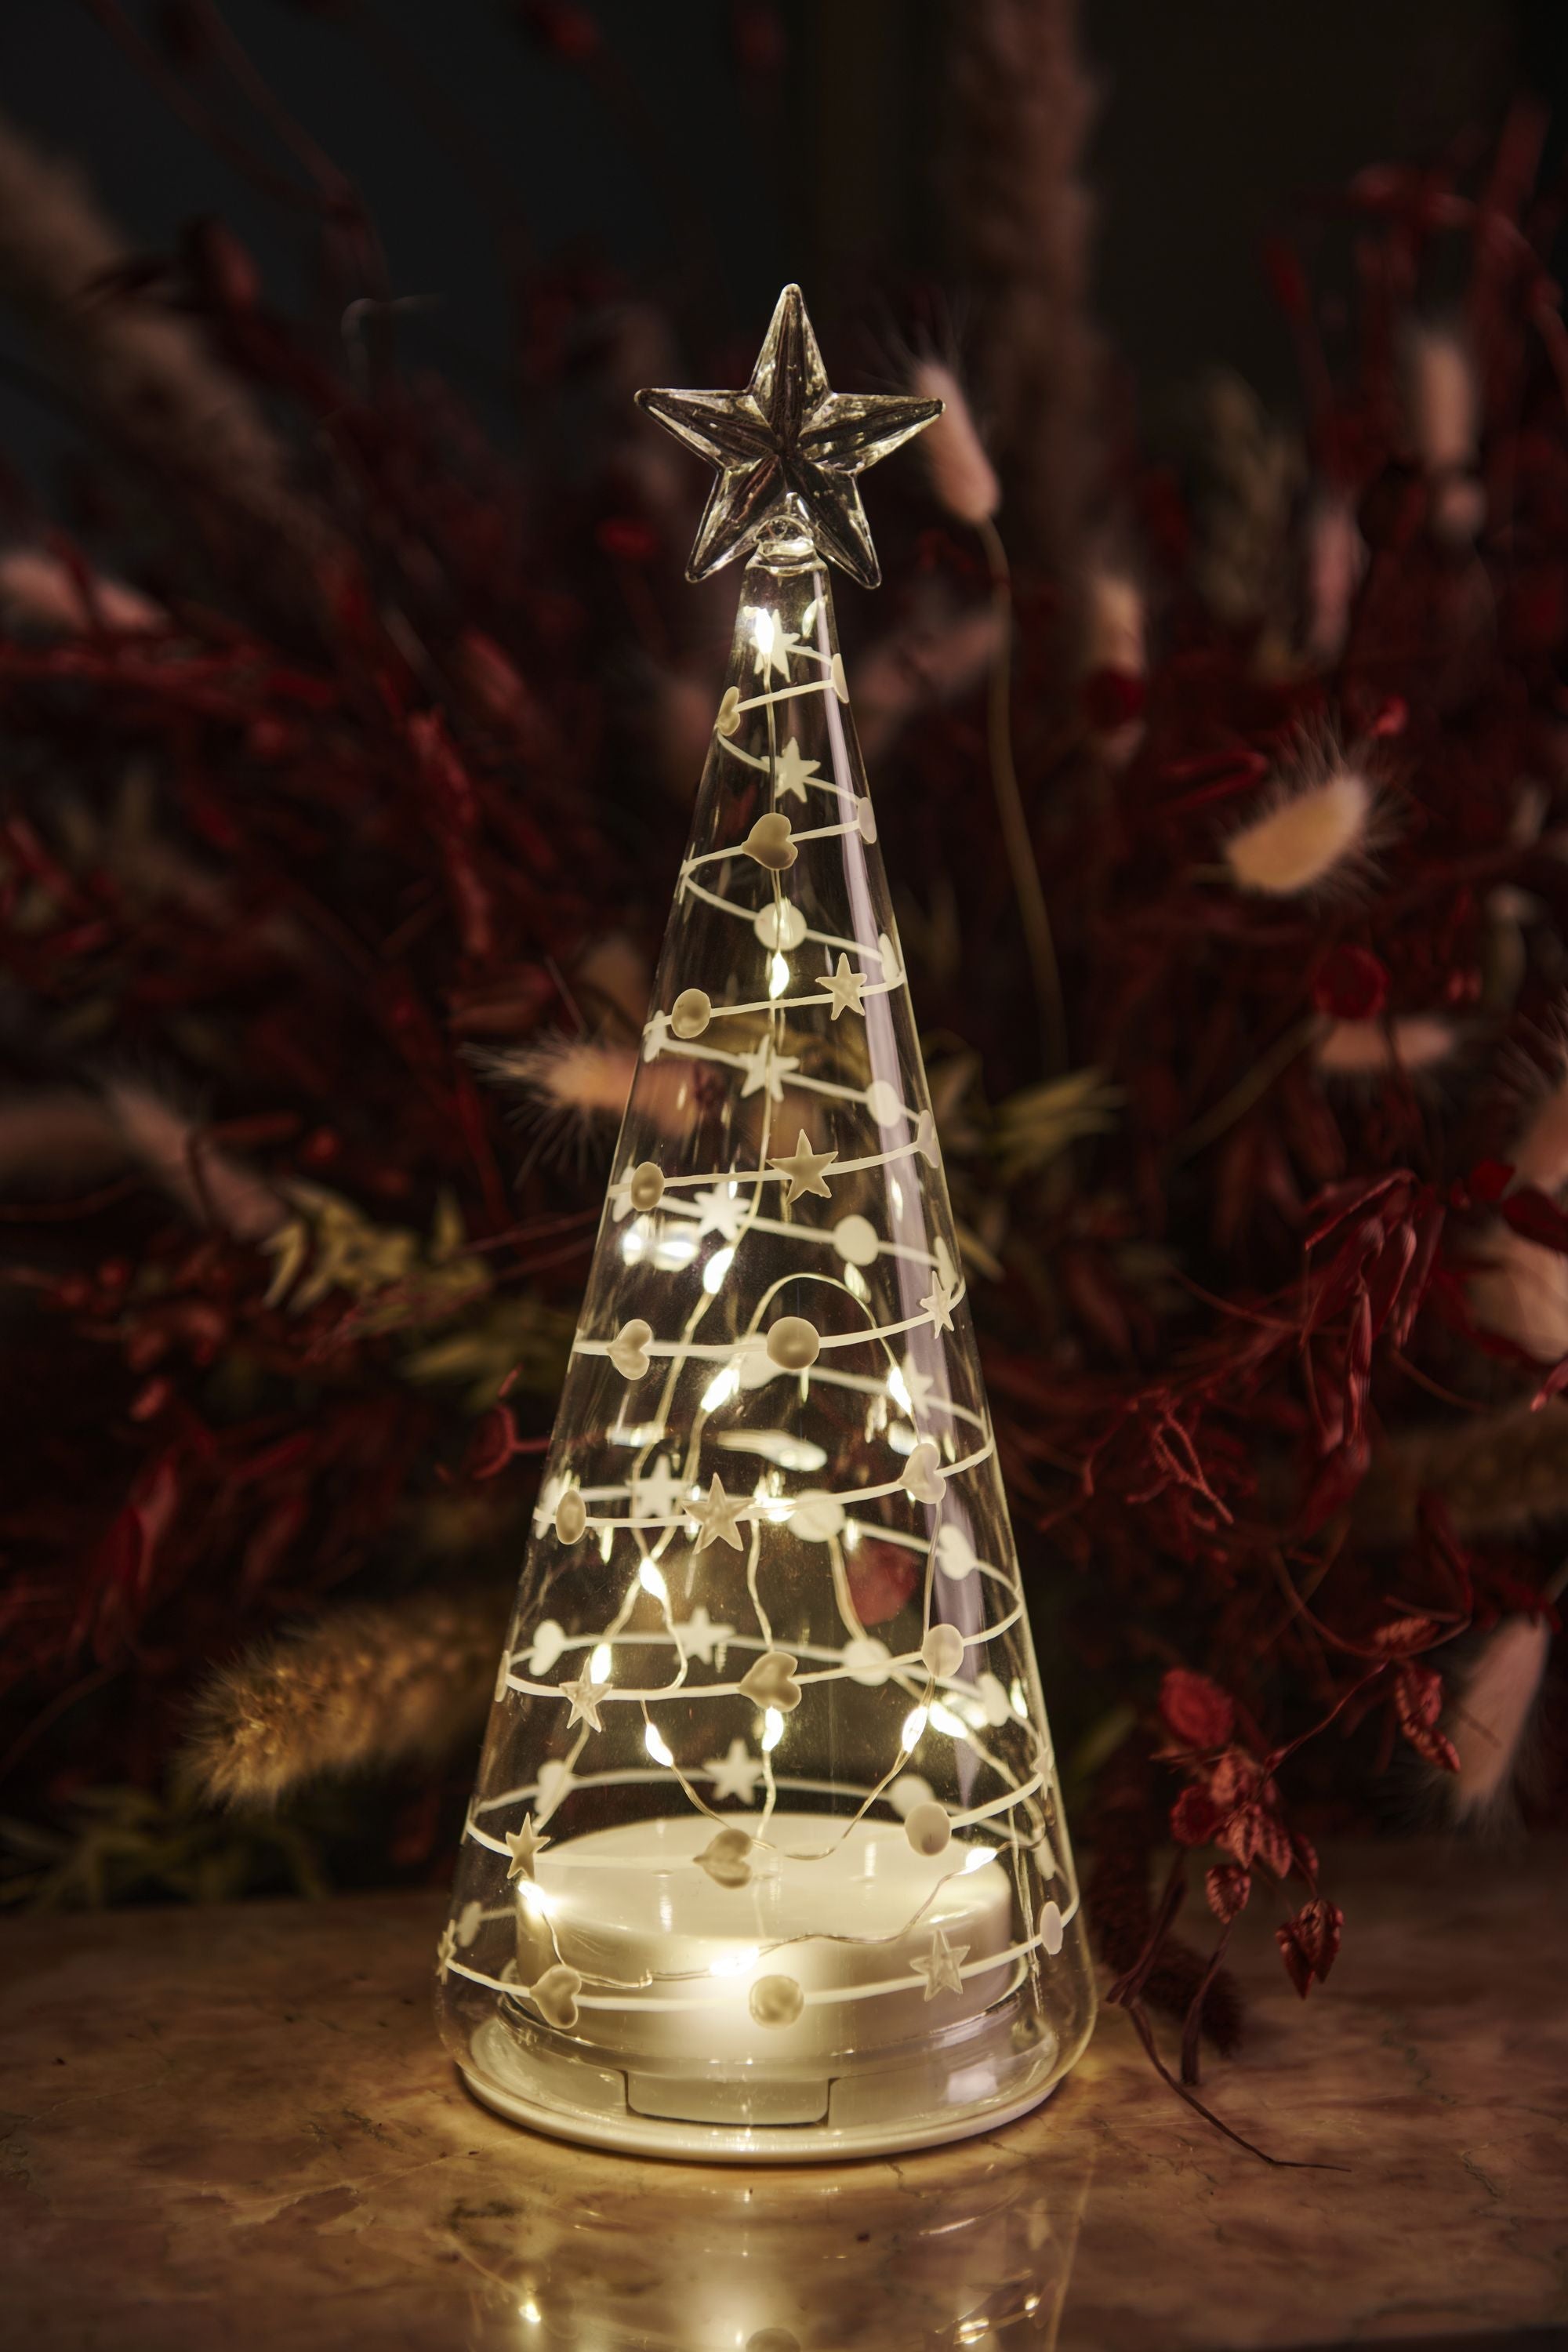 Sirius süßer Weihnachtsbaum, H26 cm, weiß/klar